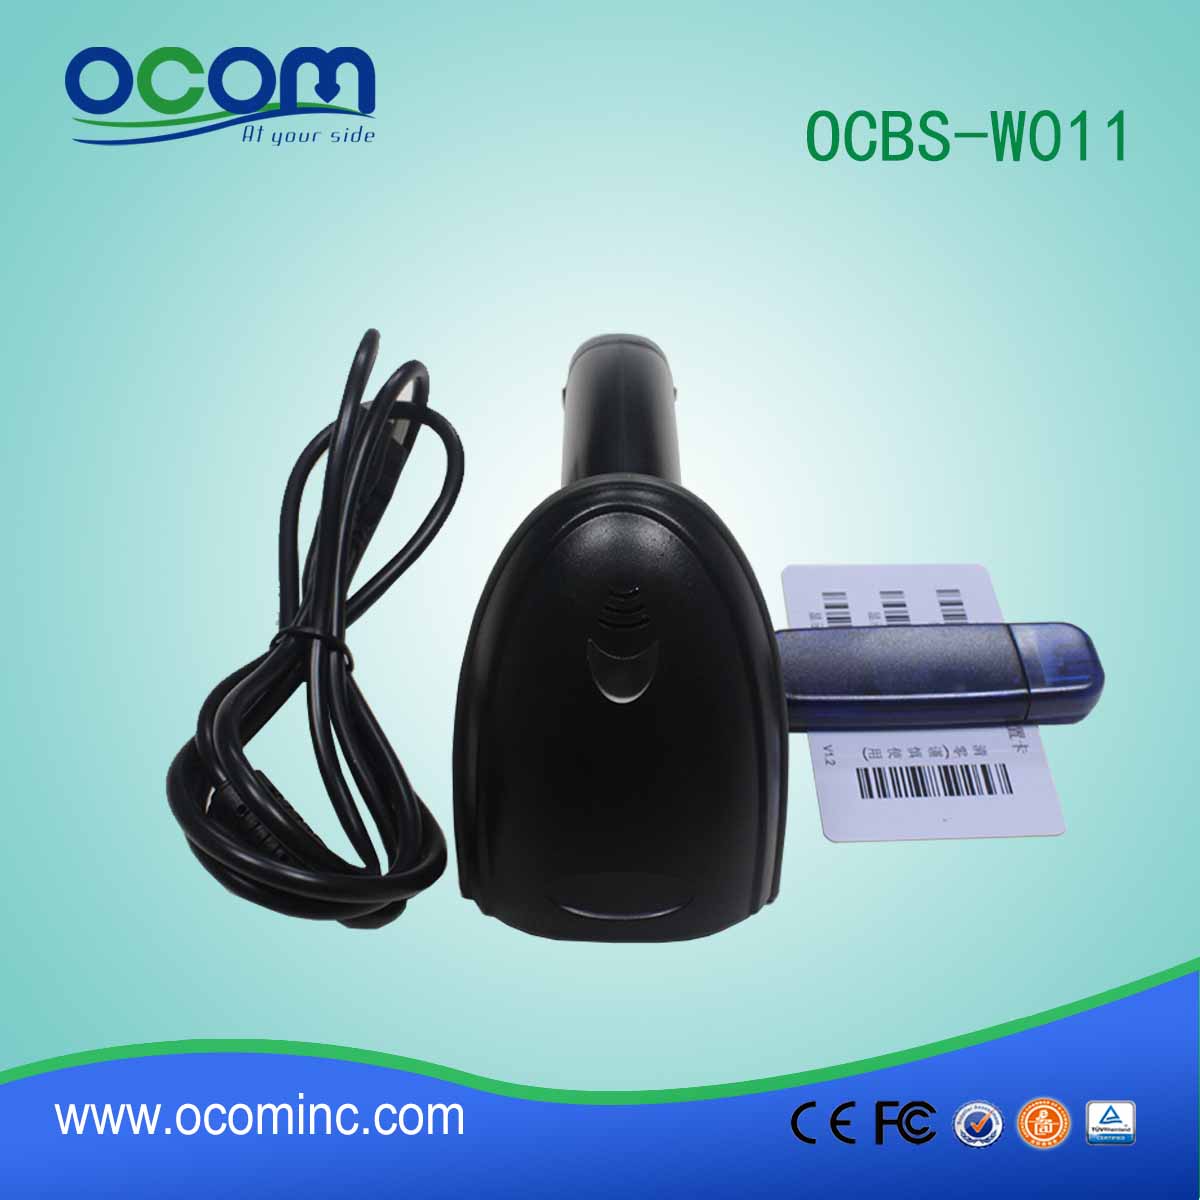 عالية مسح معدل USB RF433MHz ايرلس ليزر ماسح الباركود (OCBS-W011)